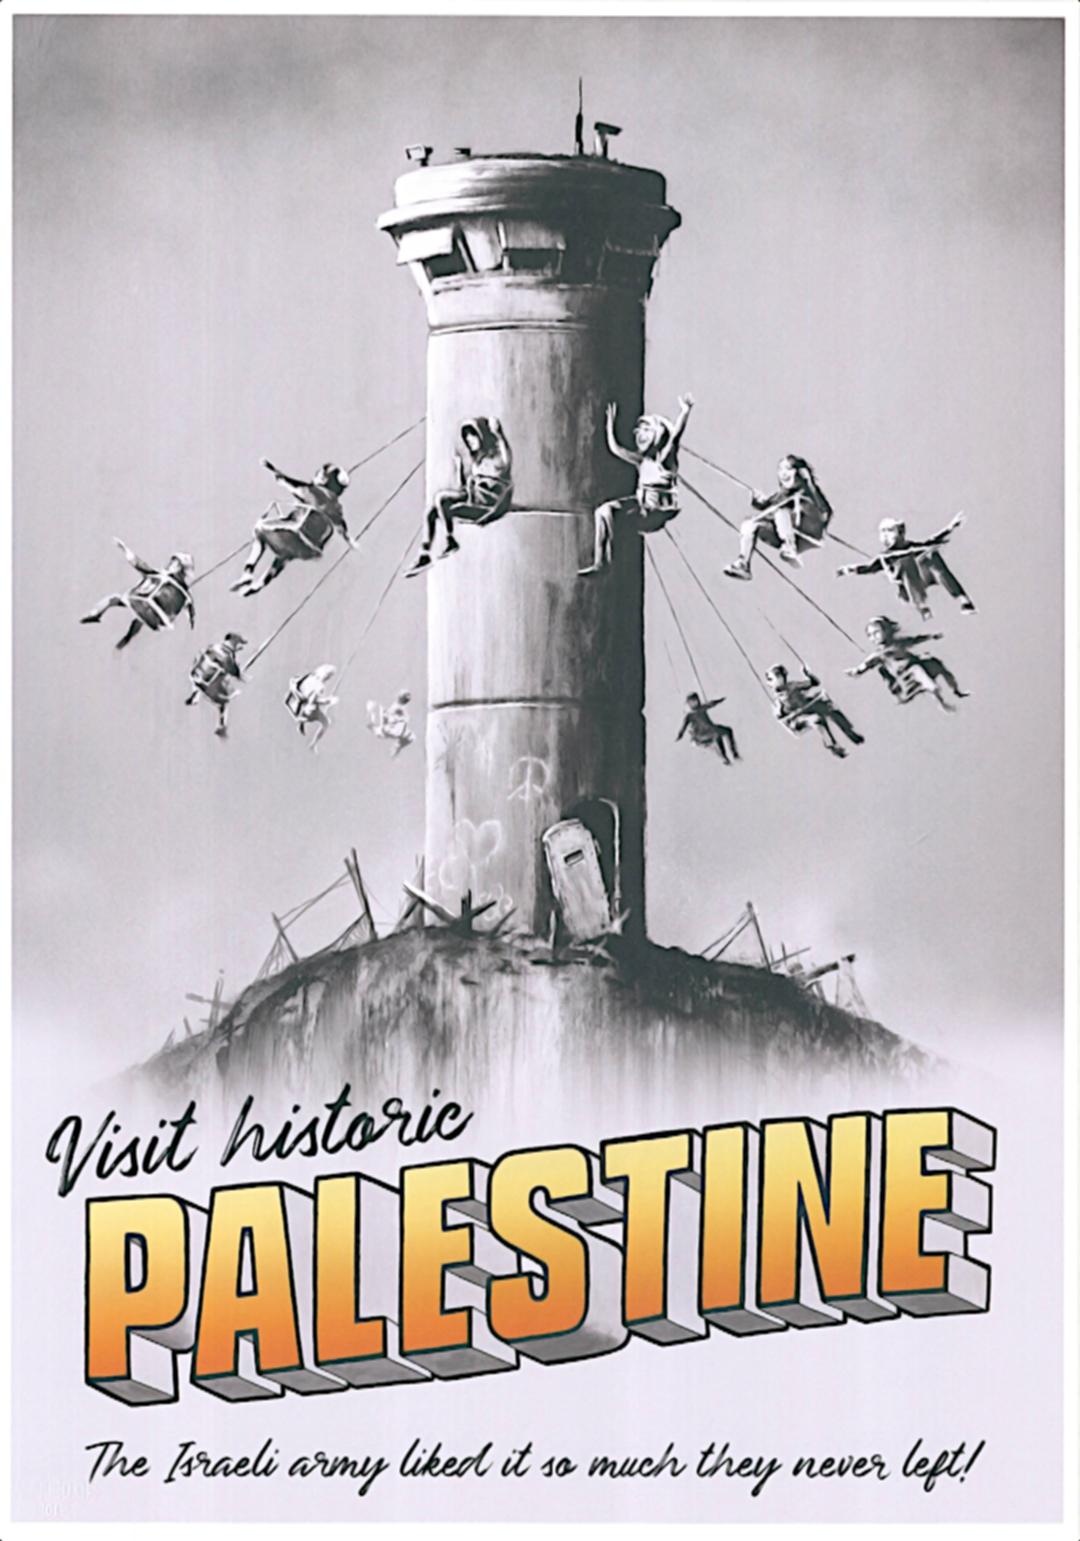 Dieses Poster wurde von Banksy exklusiv für das Walled Off Hotel entworfen.
Es ist ausschließlich im Walled Off Hotel in Bethlehem erhältlich und auf wenige Exemplare begrenzt.
Äußerst selten!

Farboffsetlithographie.

Trockener Stempel.

Ein